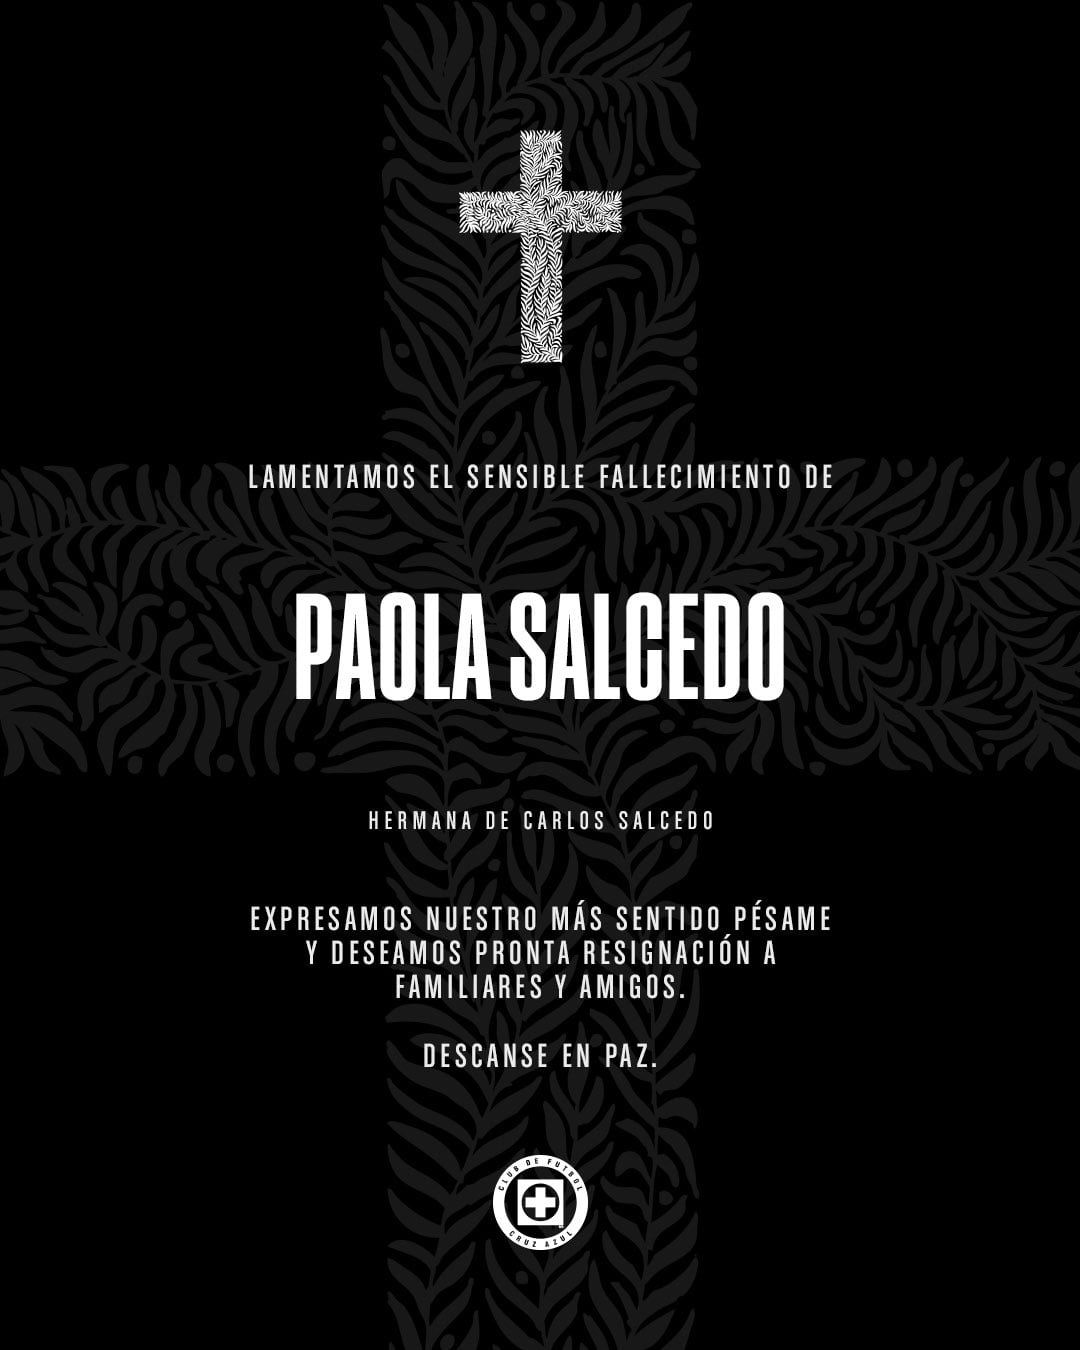 Esta fue la imagen que el club mexicano publicó en referencia al fallecimiento de la hermana de Carlos Salcido, Paola Salcedo - crédito @CruzAzul/X